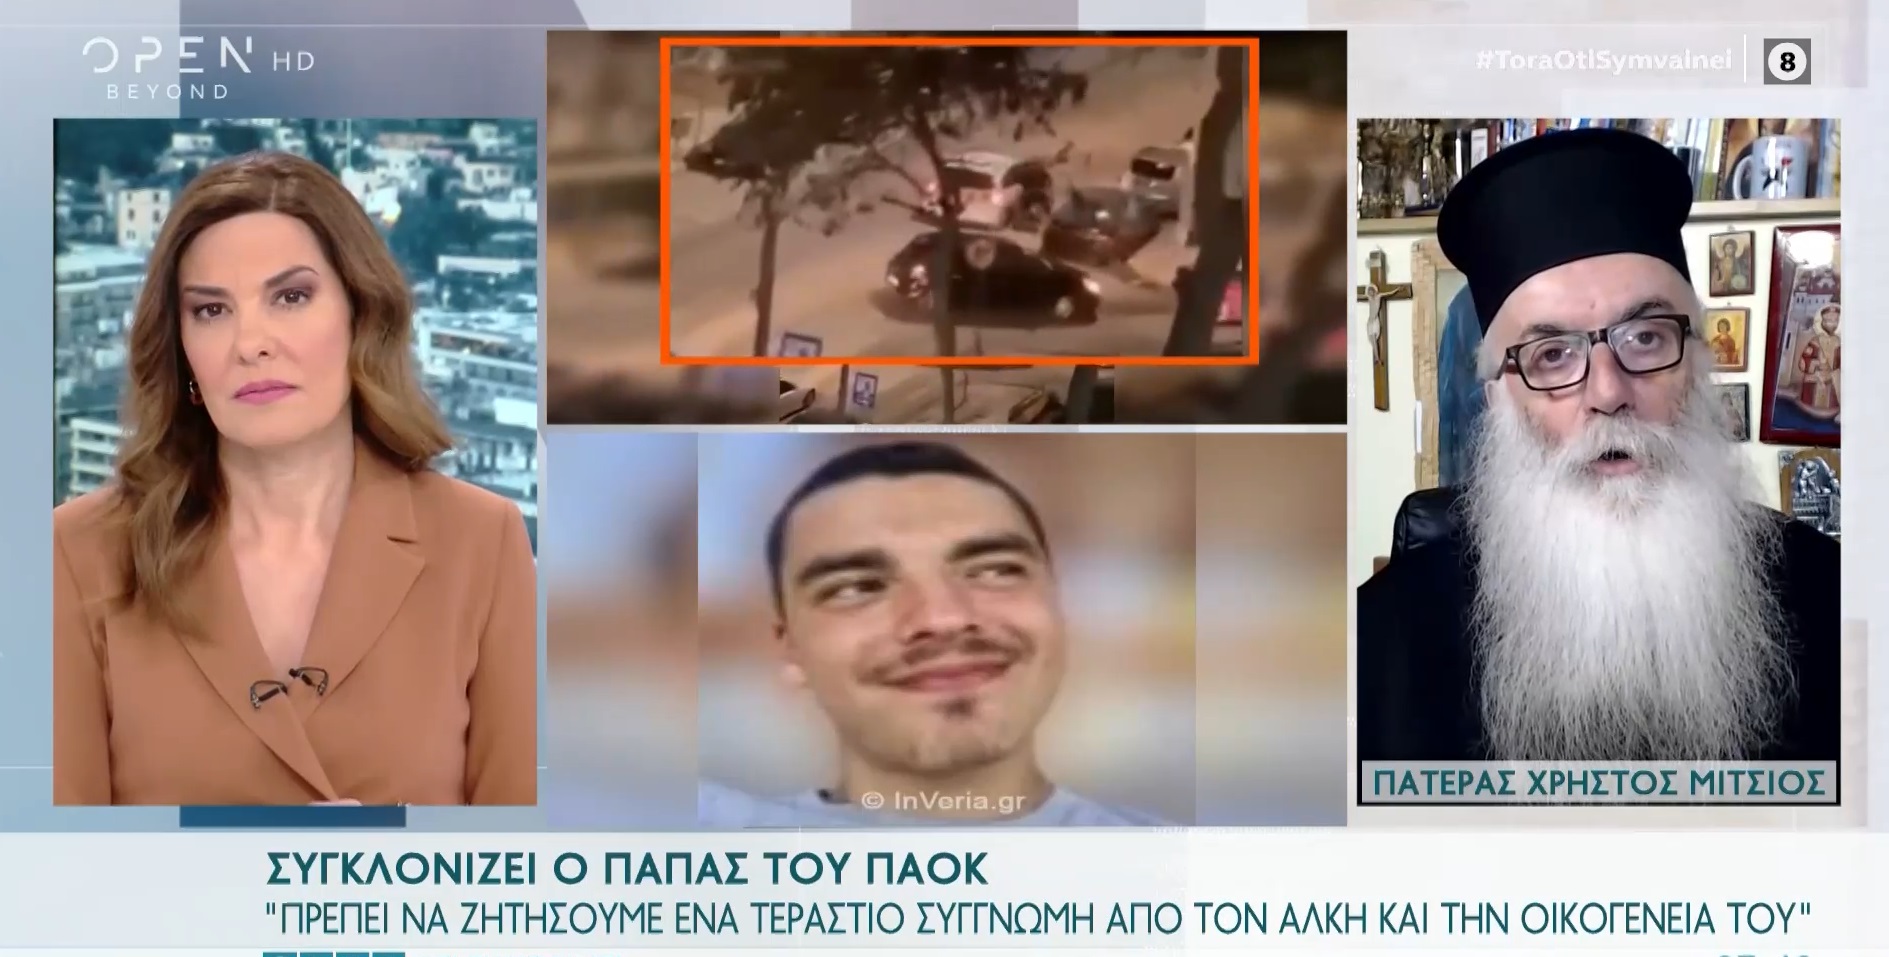 Δολοφονία 19χρονου στη Θεσσαλονίκη: «Εξομολογούνται παιδιά που συμμετείχαν σε ραντεβού θανάτου» λέει ο «παπα-ΠΑΟΚ»(βίντεο)